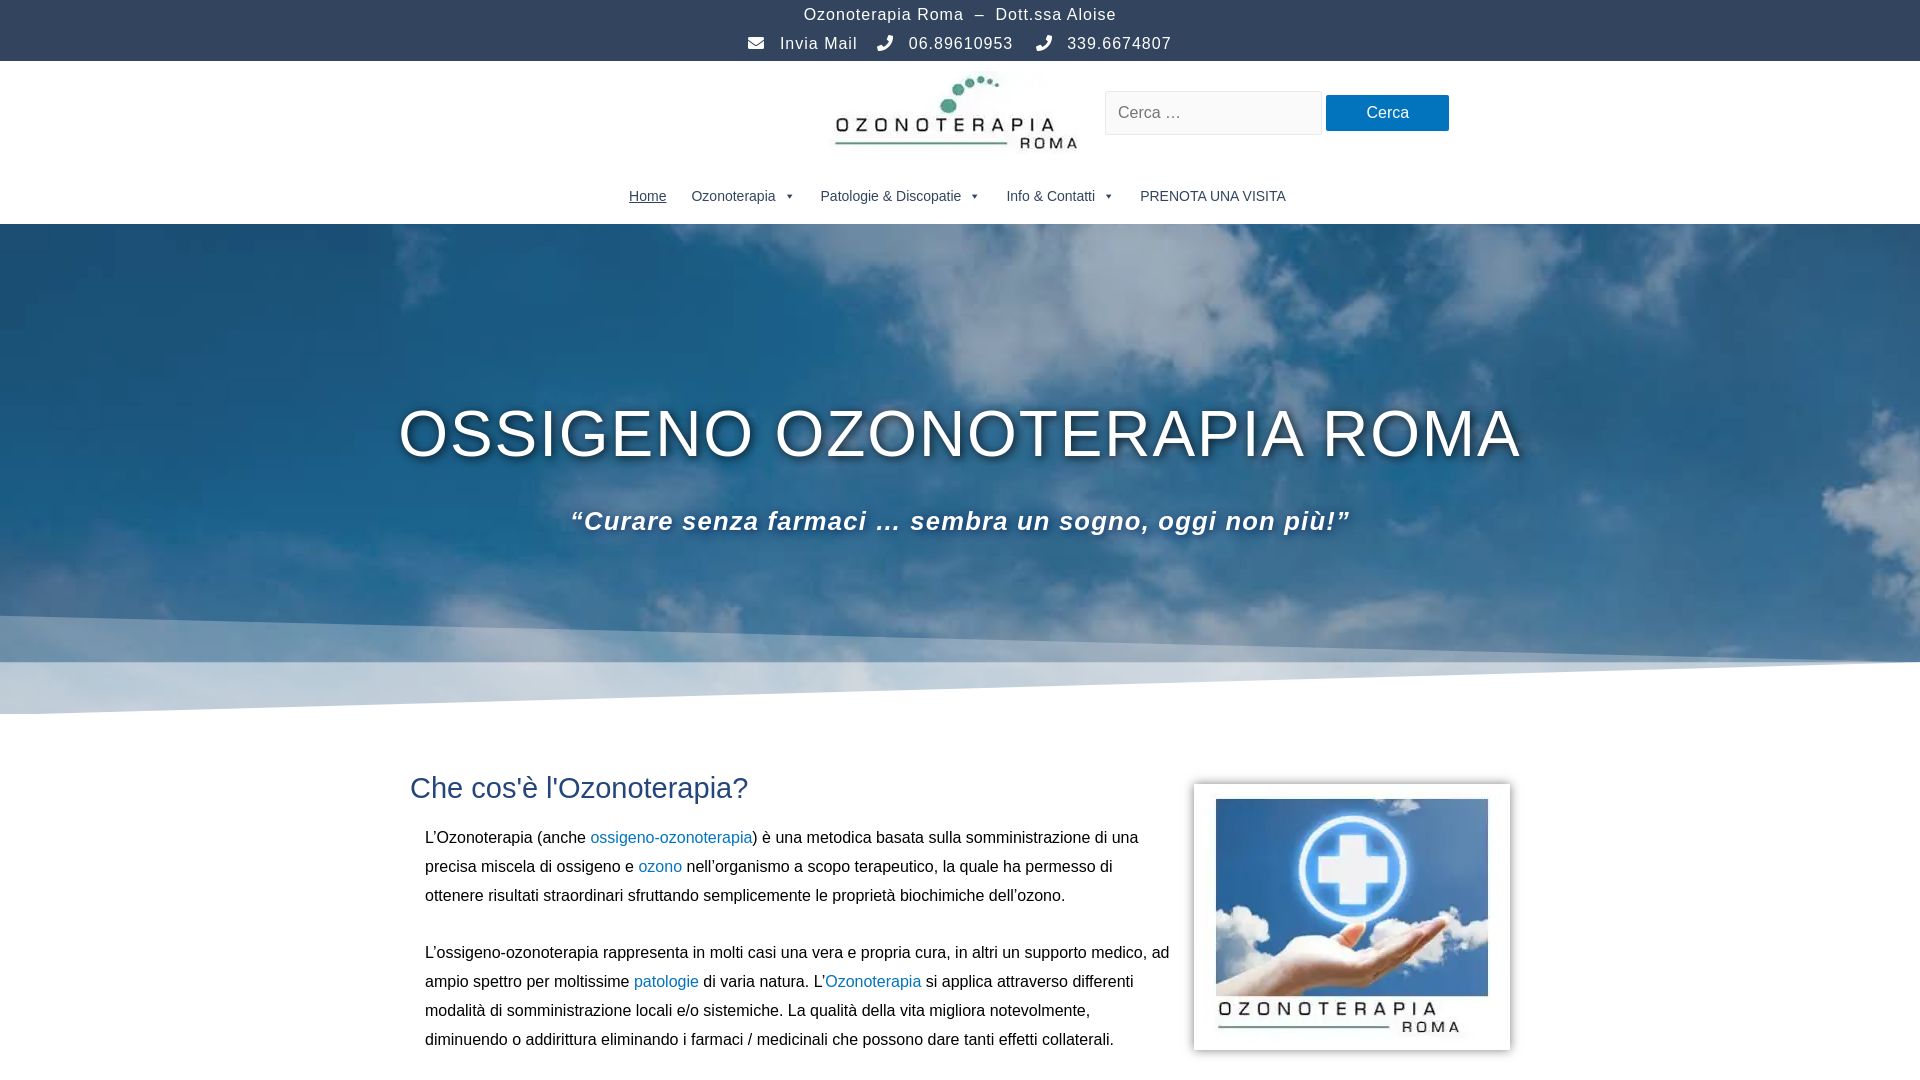 网站状态 ozonoterapiaroma.it 是  在线的